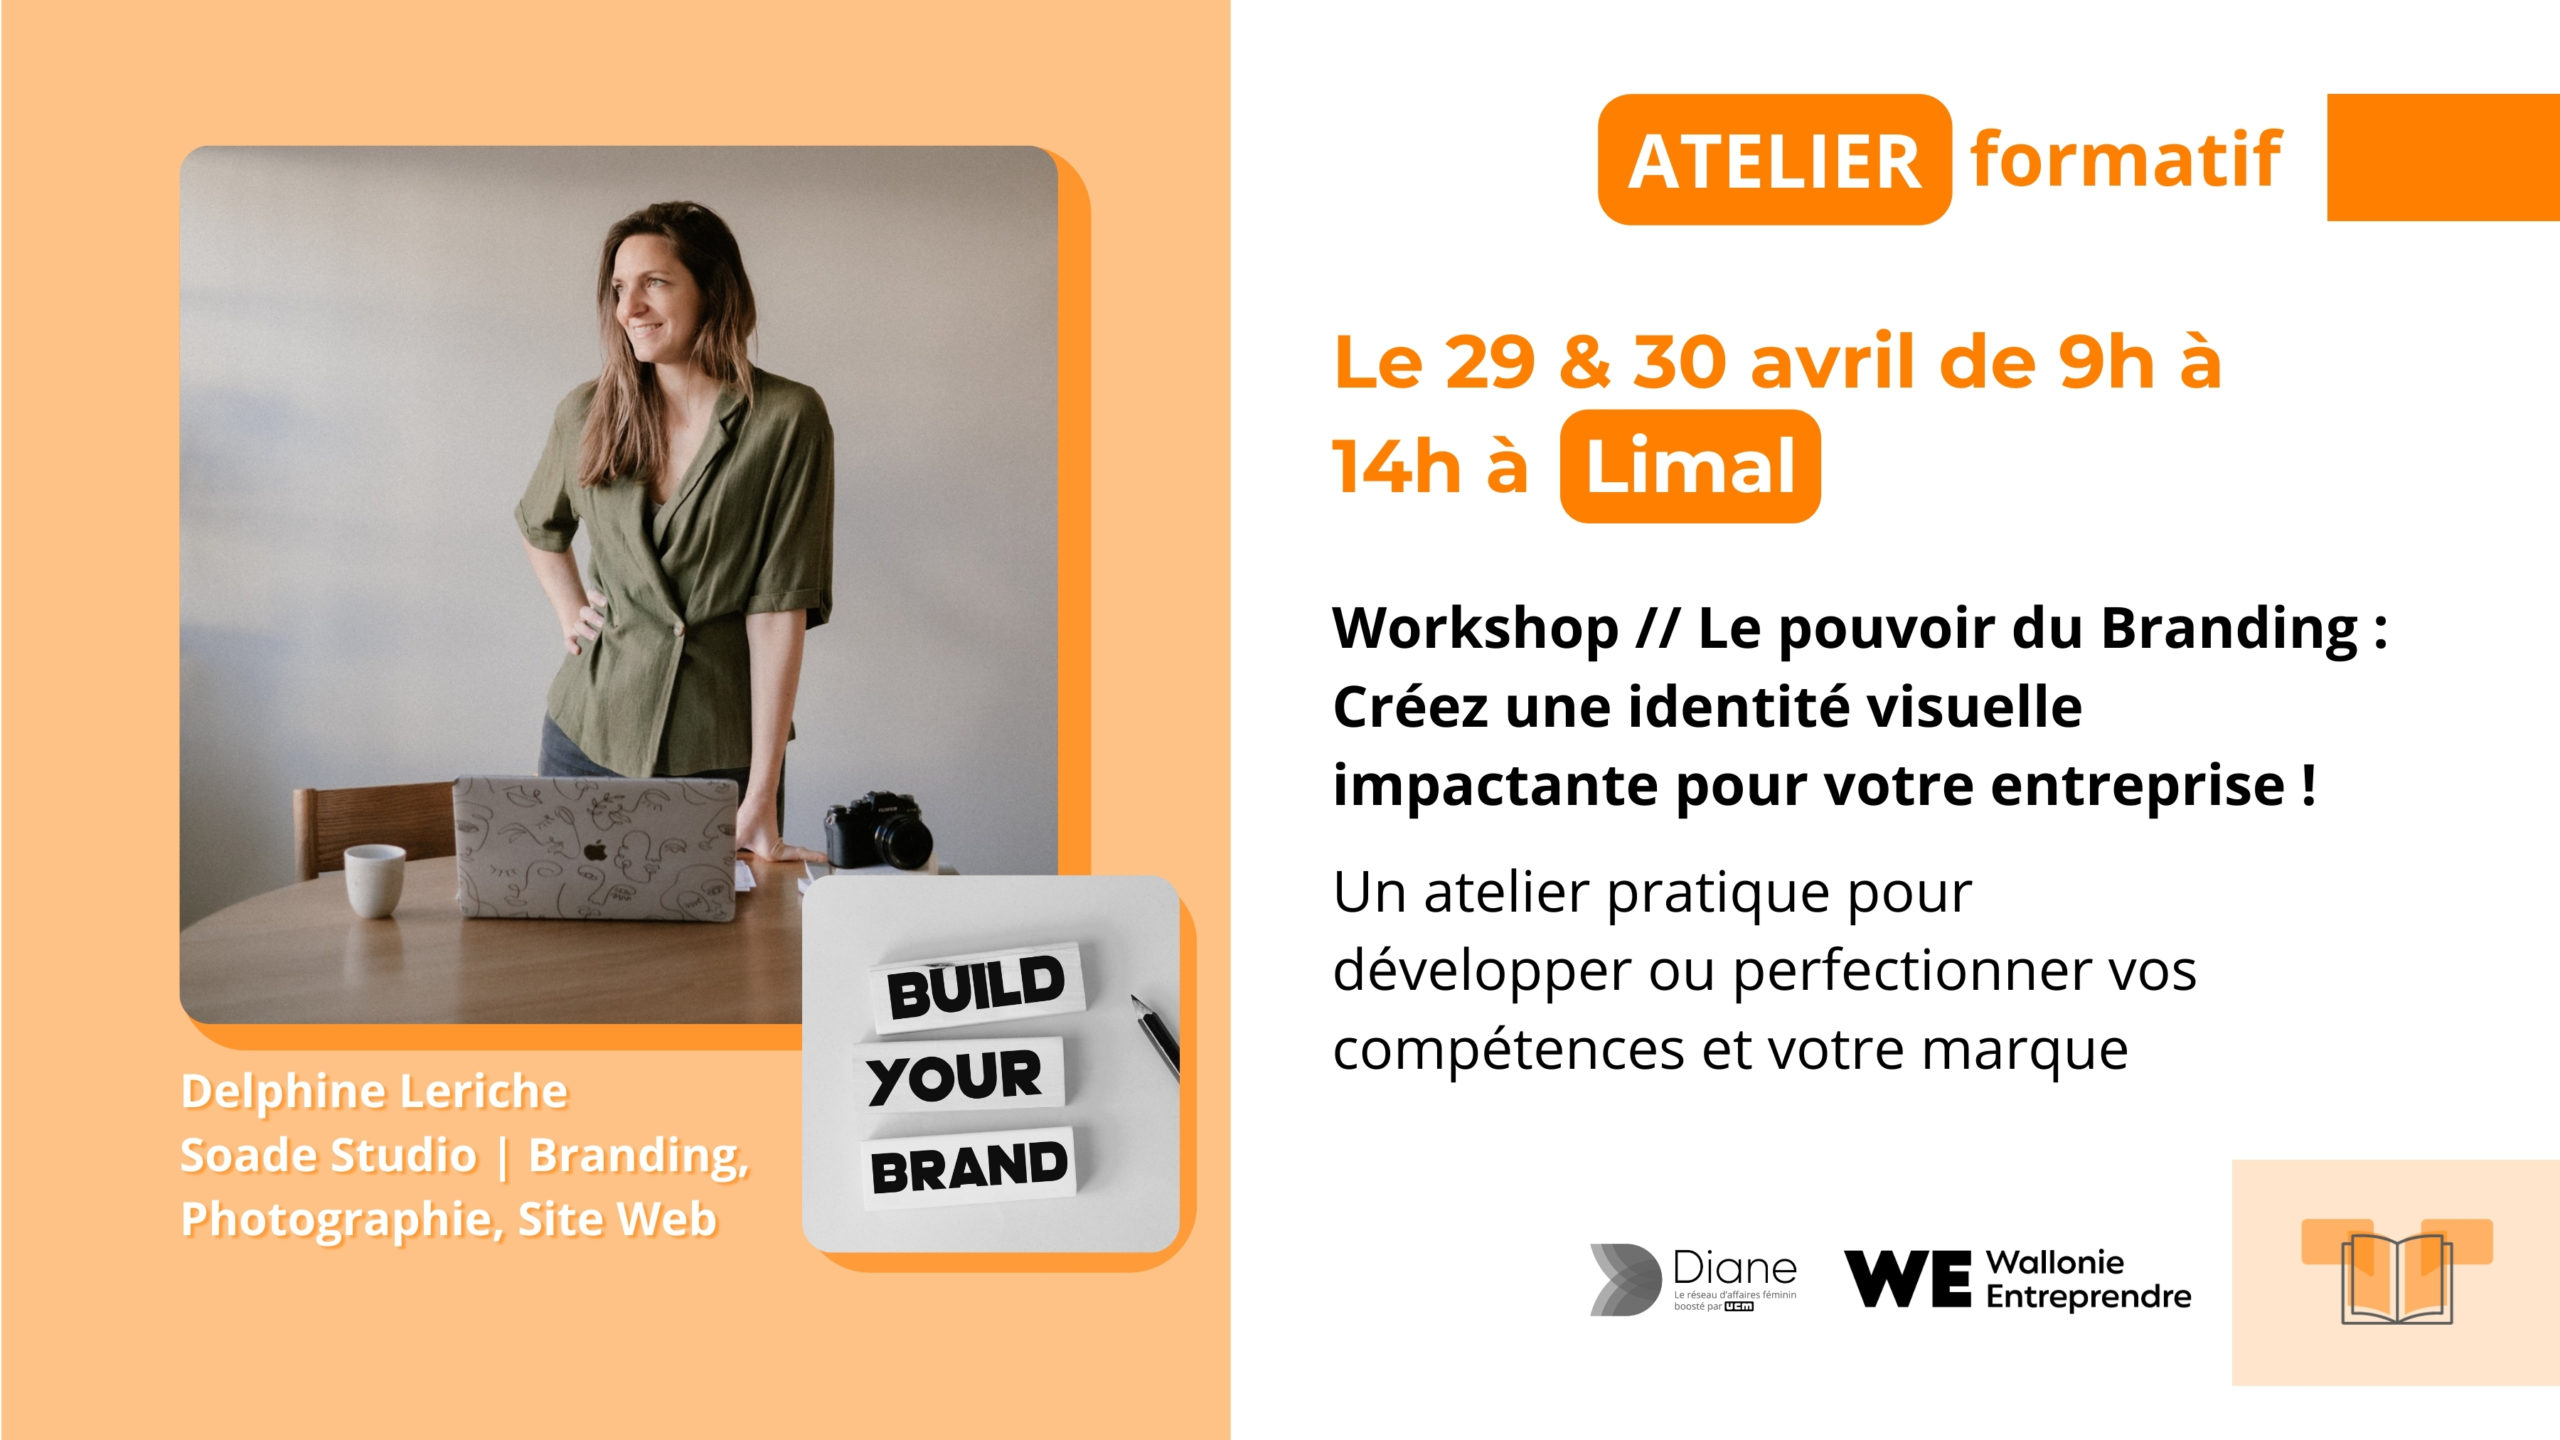 Workshop // Le pouvoir du Branding : Créez une identité visuelle impactante pour votre entreprise ! delphine leriche réseau diane soade studio